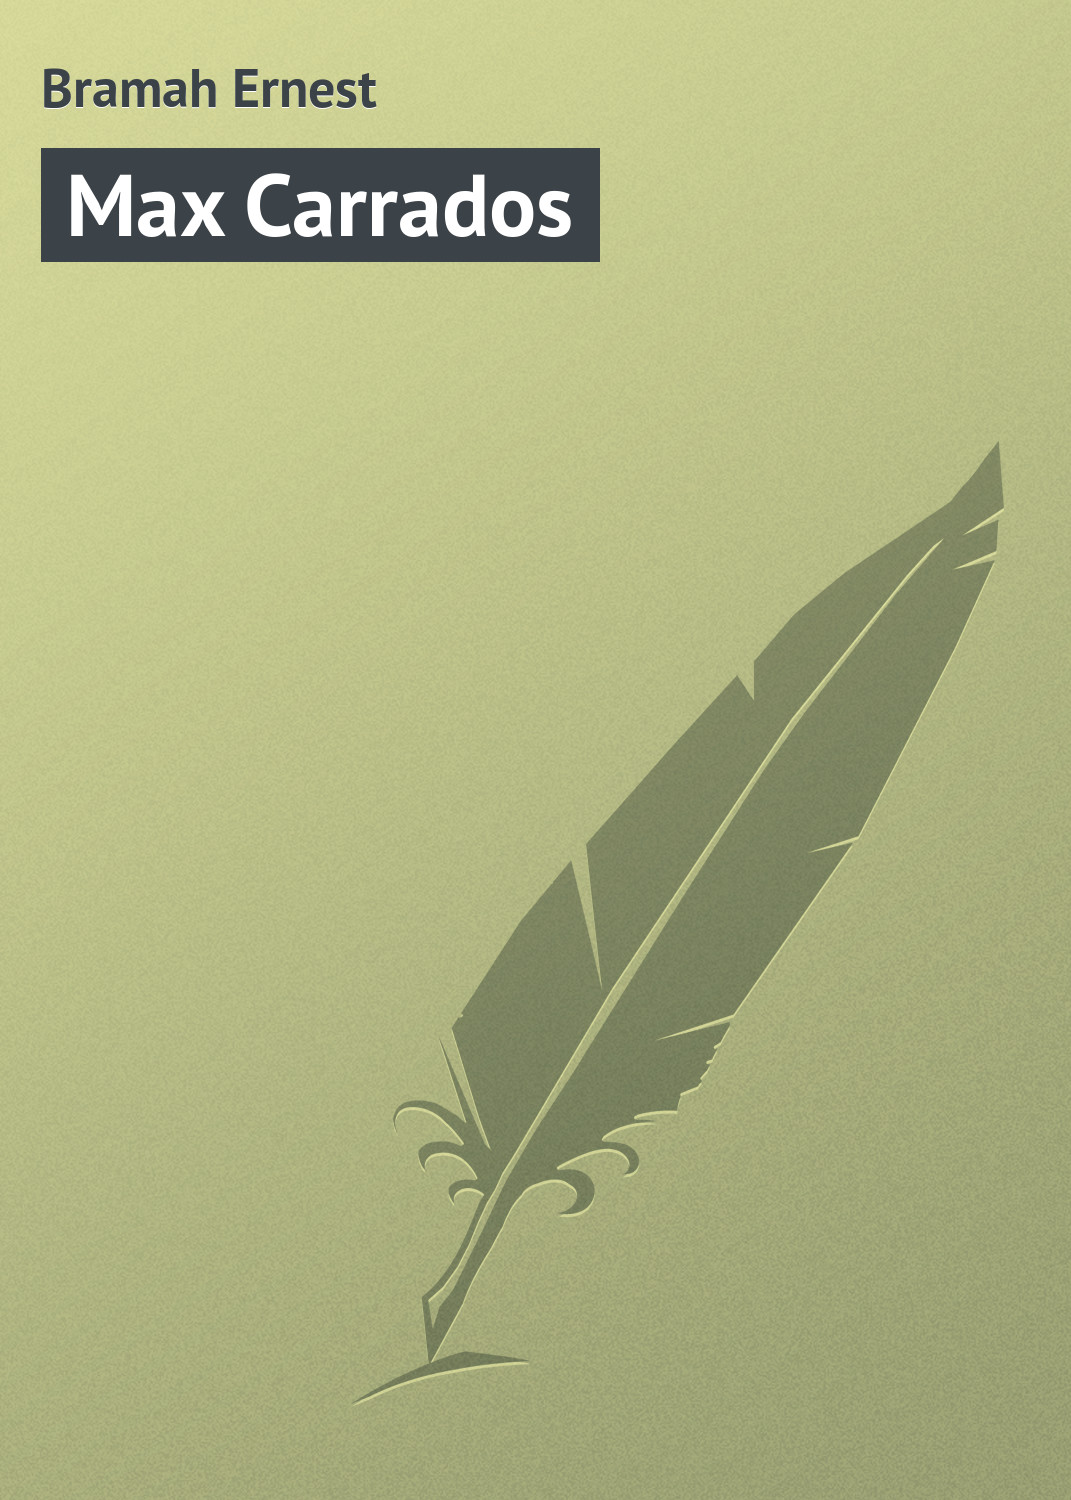 Книга Max Carrados из серии , созданная Ernest Bramah, может относится к жанру Классические детективы, Зарубежные детективы, Зарубежная классика. Стоимость электронной книги Max Carrados с идентификатором 23160539 составляет 5.99 руб.